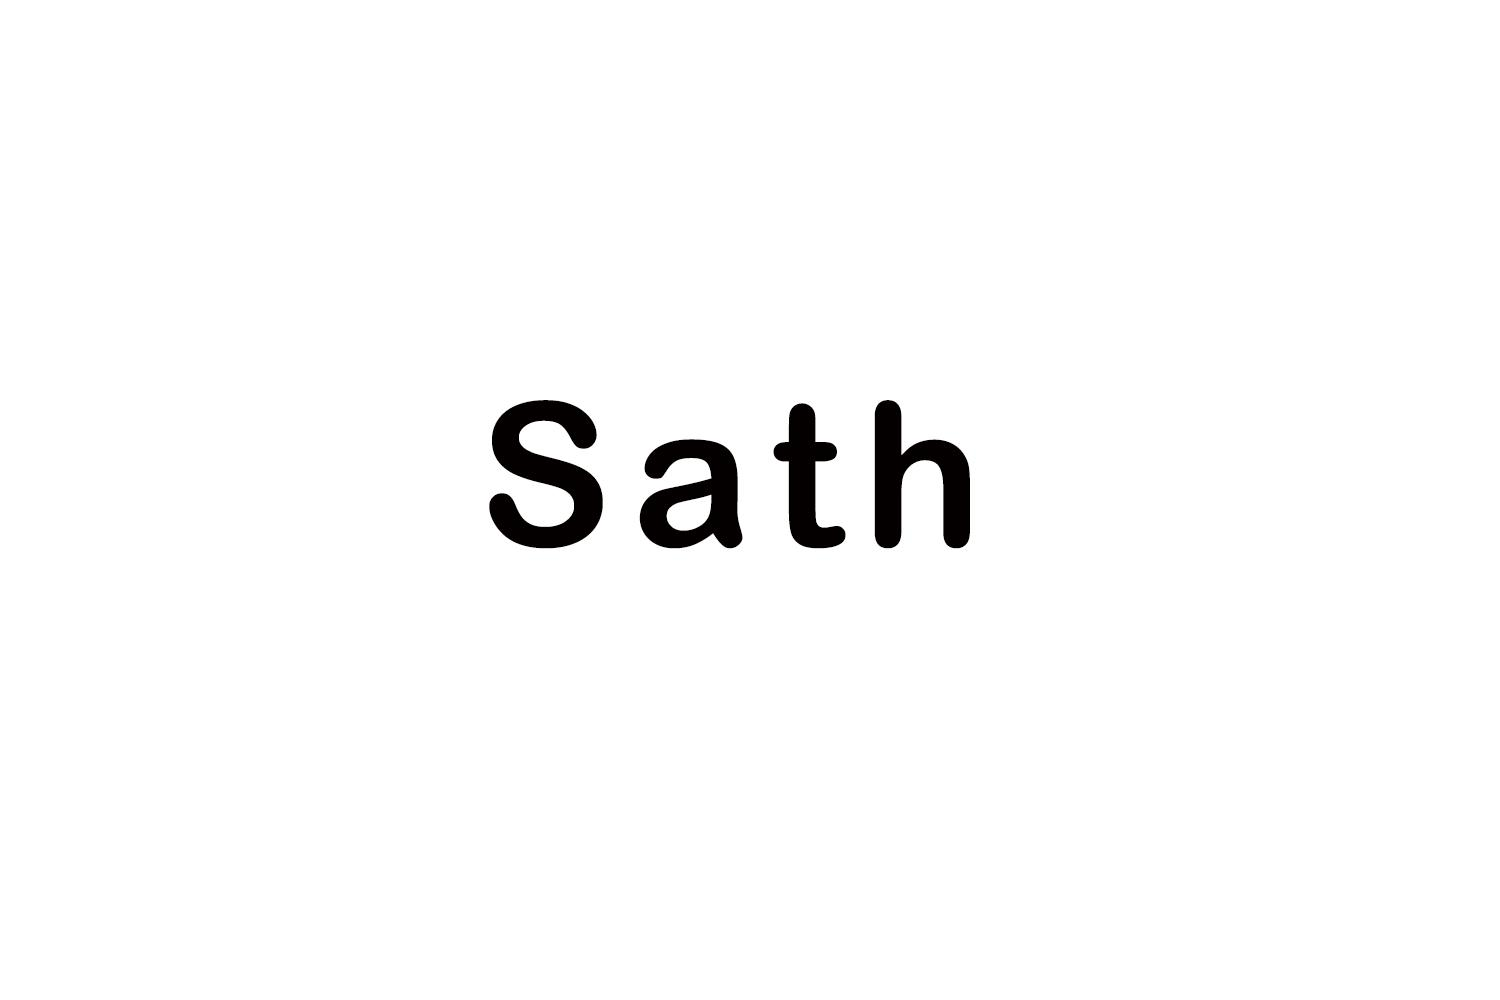 SATH